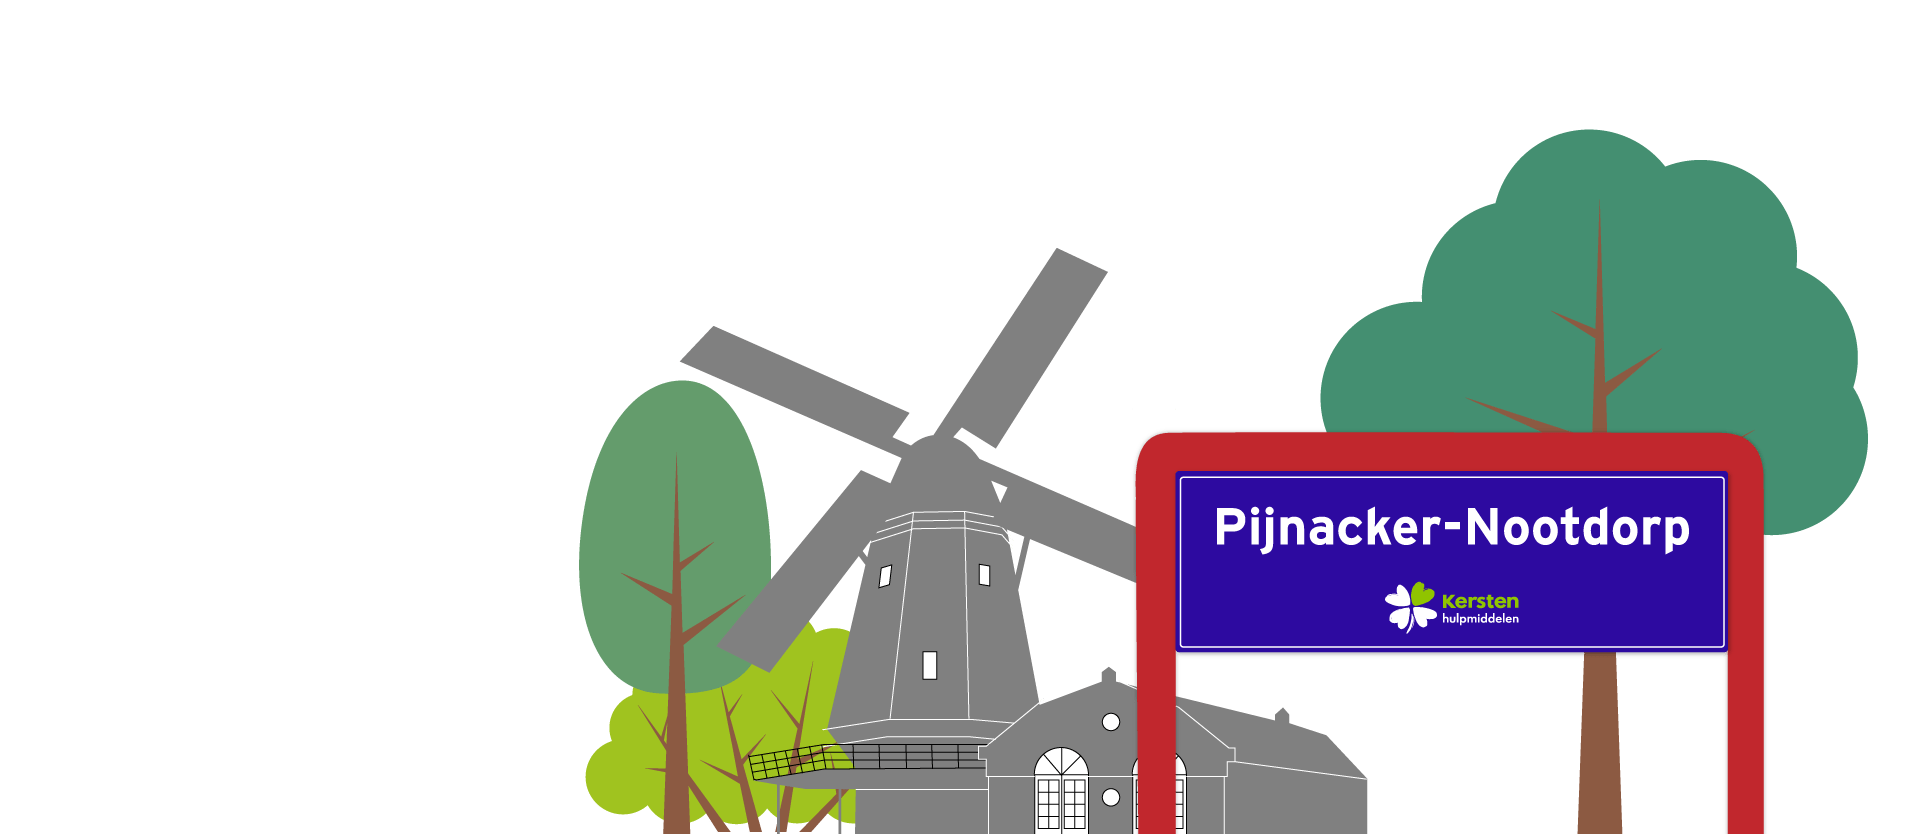 Wmo hulpmiddelen in gemeente Pijnacker-Nootdorp